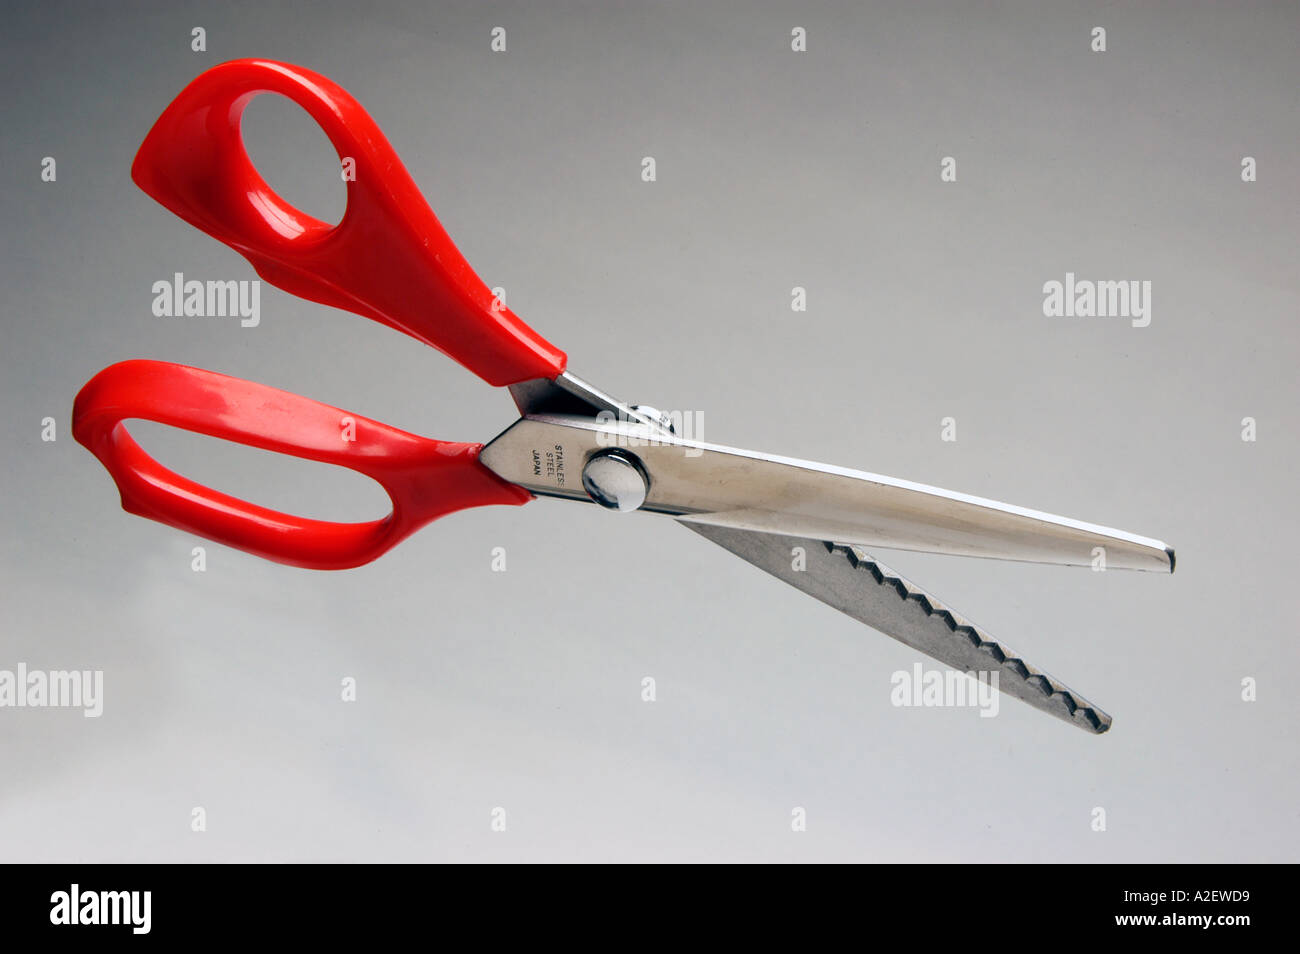 https://c8.alamy.com/comp/A2EWD9/pinking-scissors-A2EWD9.jpg